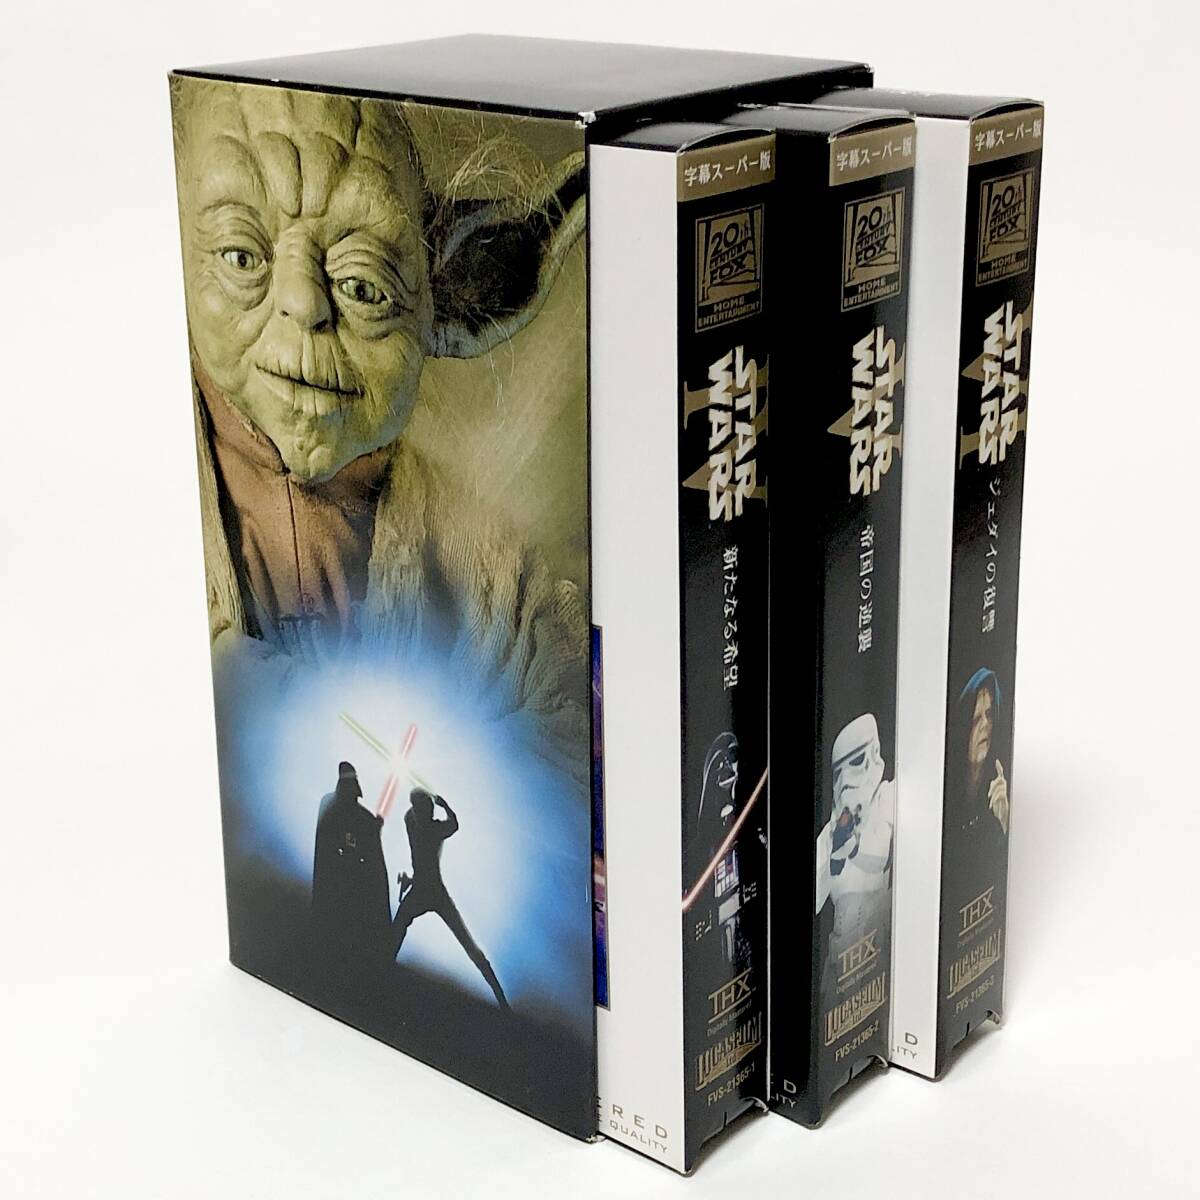 中古 VHS ビデオ 3枚組 スター・ウォーズ トリロジー 字幕スーパー版 痛みあり 再生未確認 Star Wars Trilogy VHS Video Tapes 映画 洋画_画像4